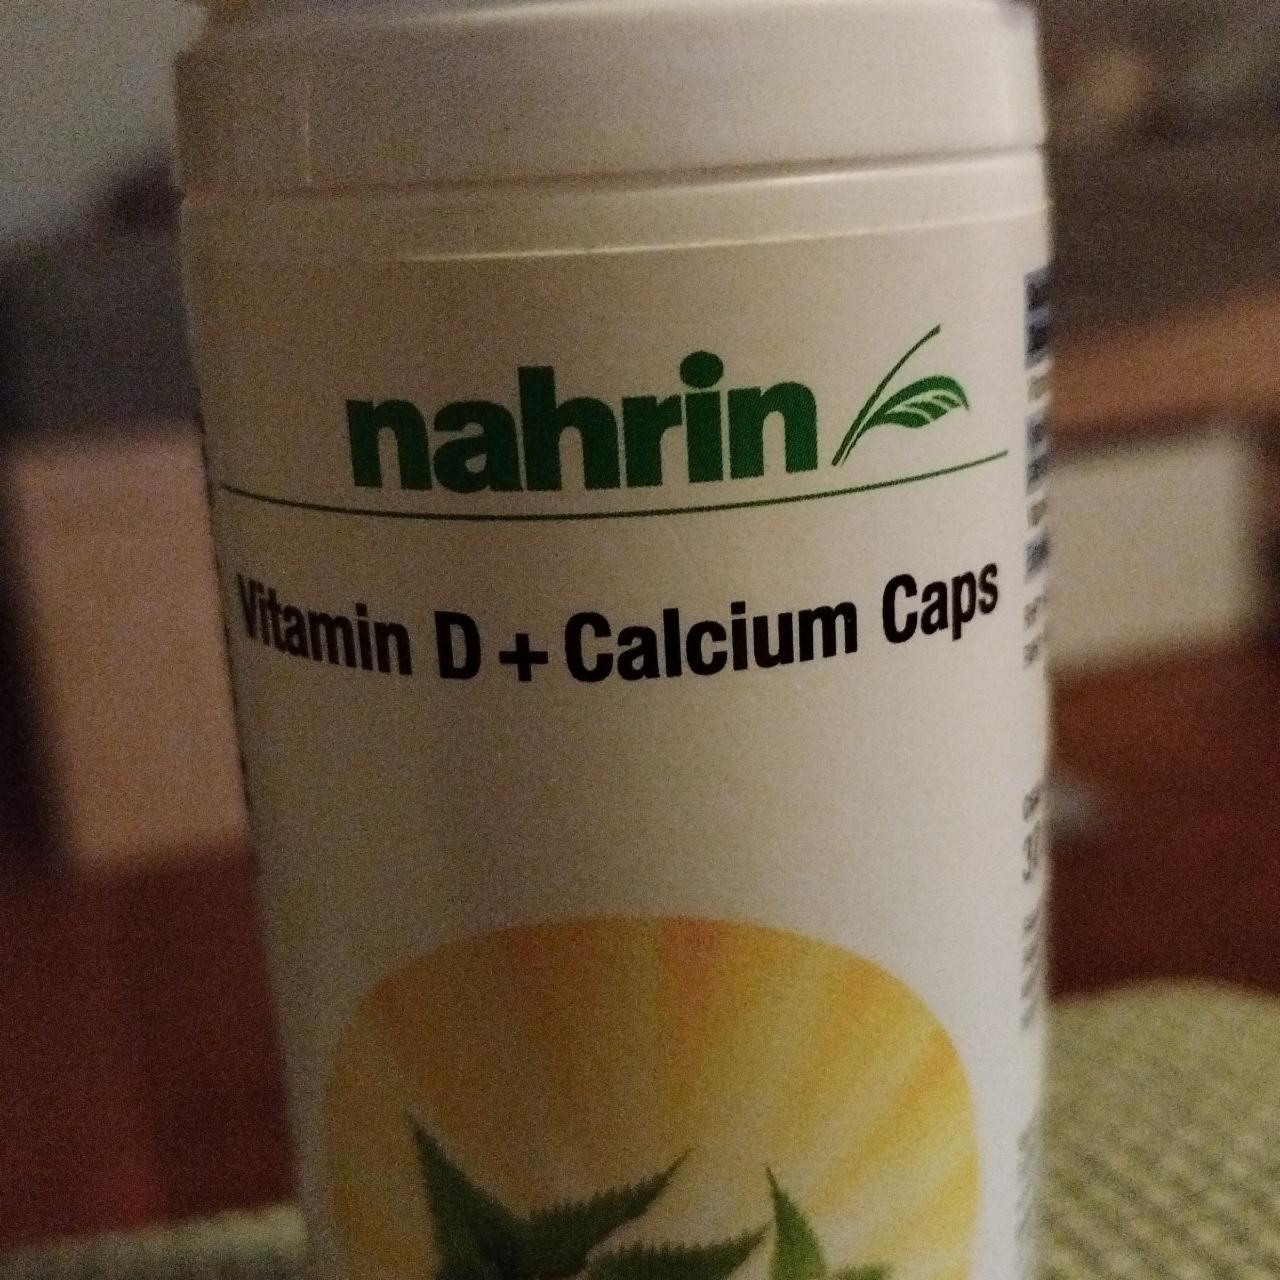 Fotografie - Vitamin D + Calcium Caps nahrin